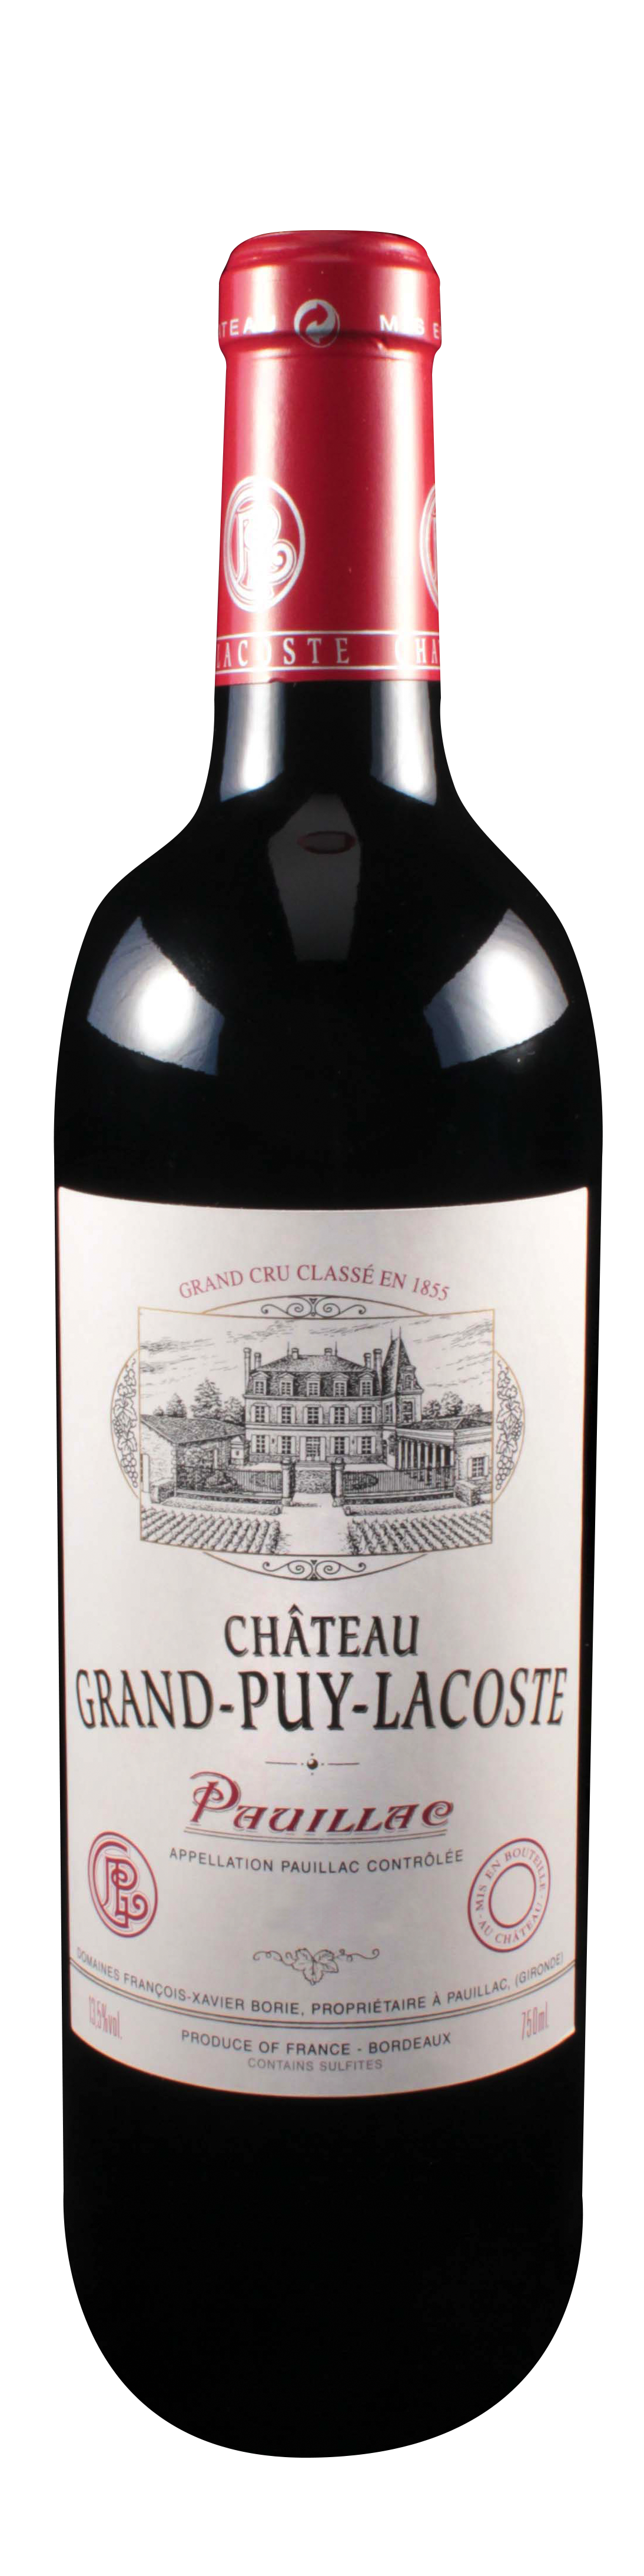 Bottle shot of 2005 Château Grand Puy Lacoste, 5ème Cru Pauillac